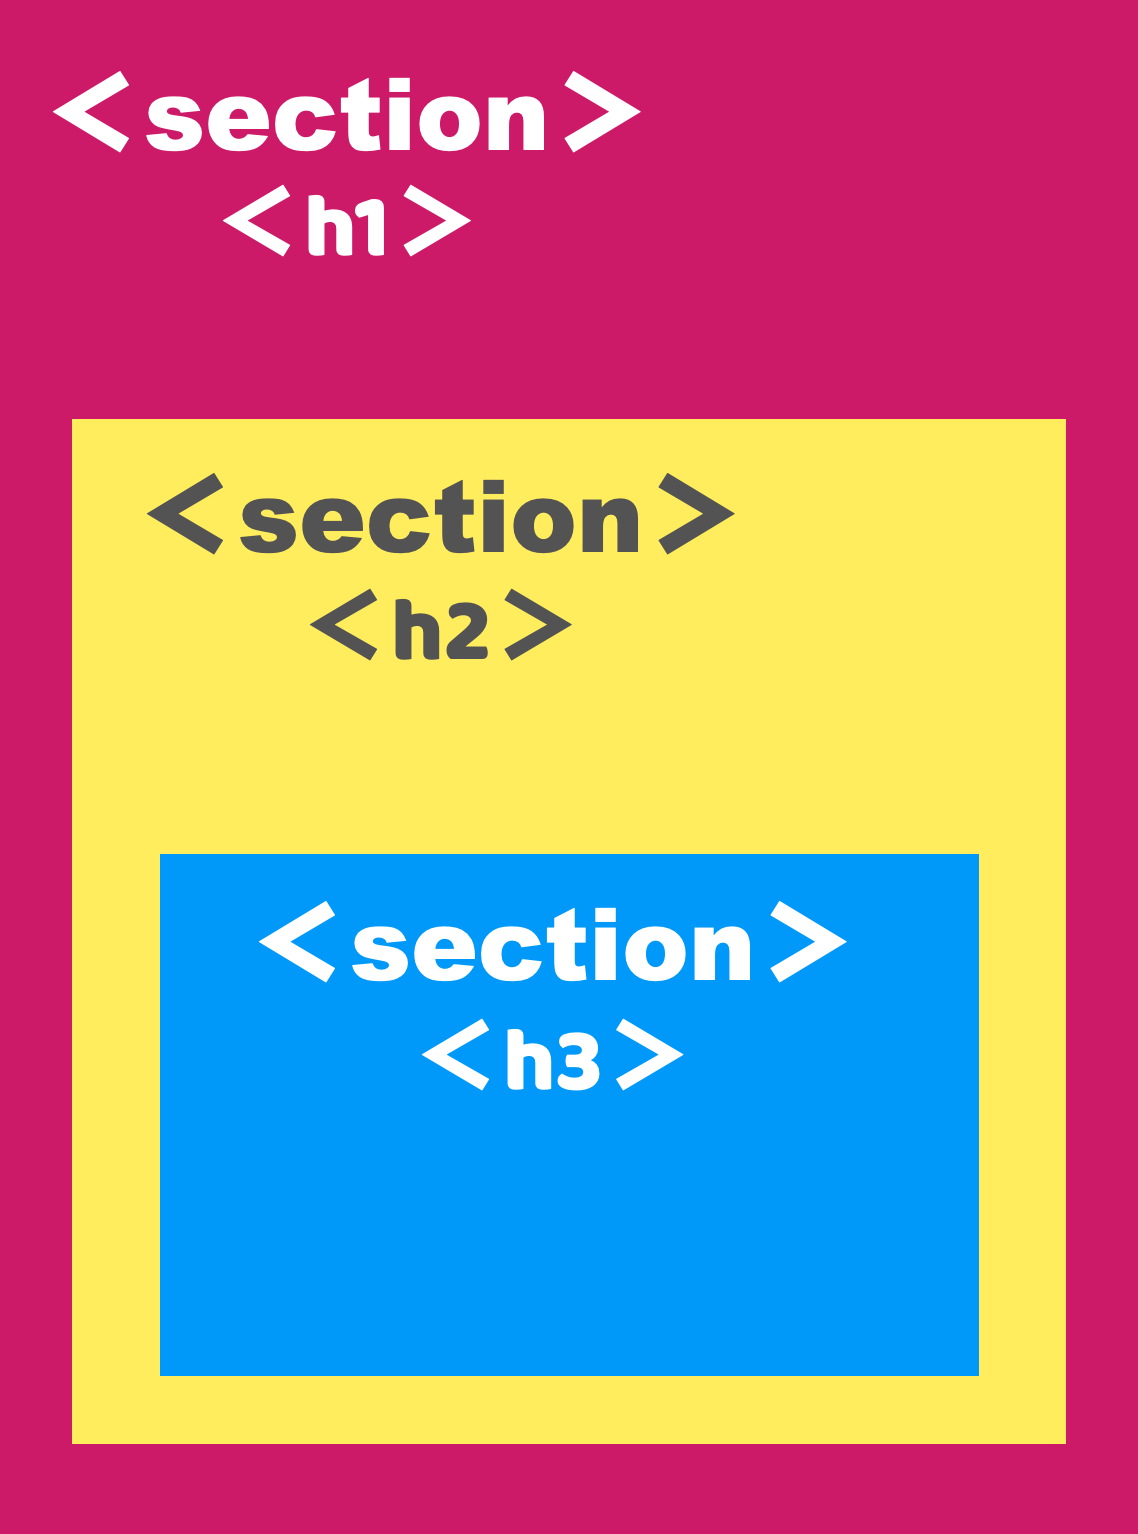 <section>タグと<h>タグのの関係図